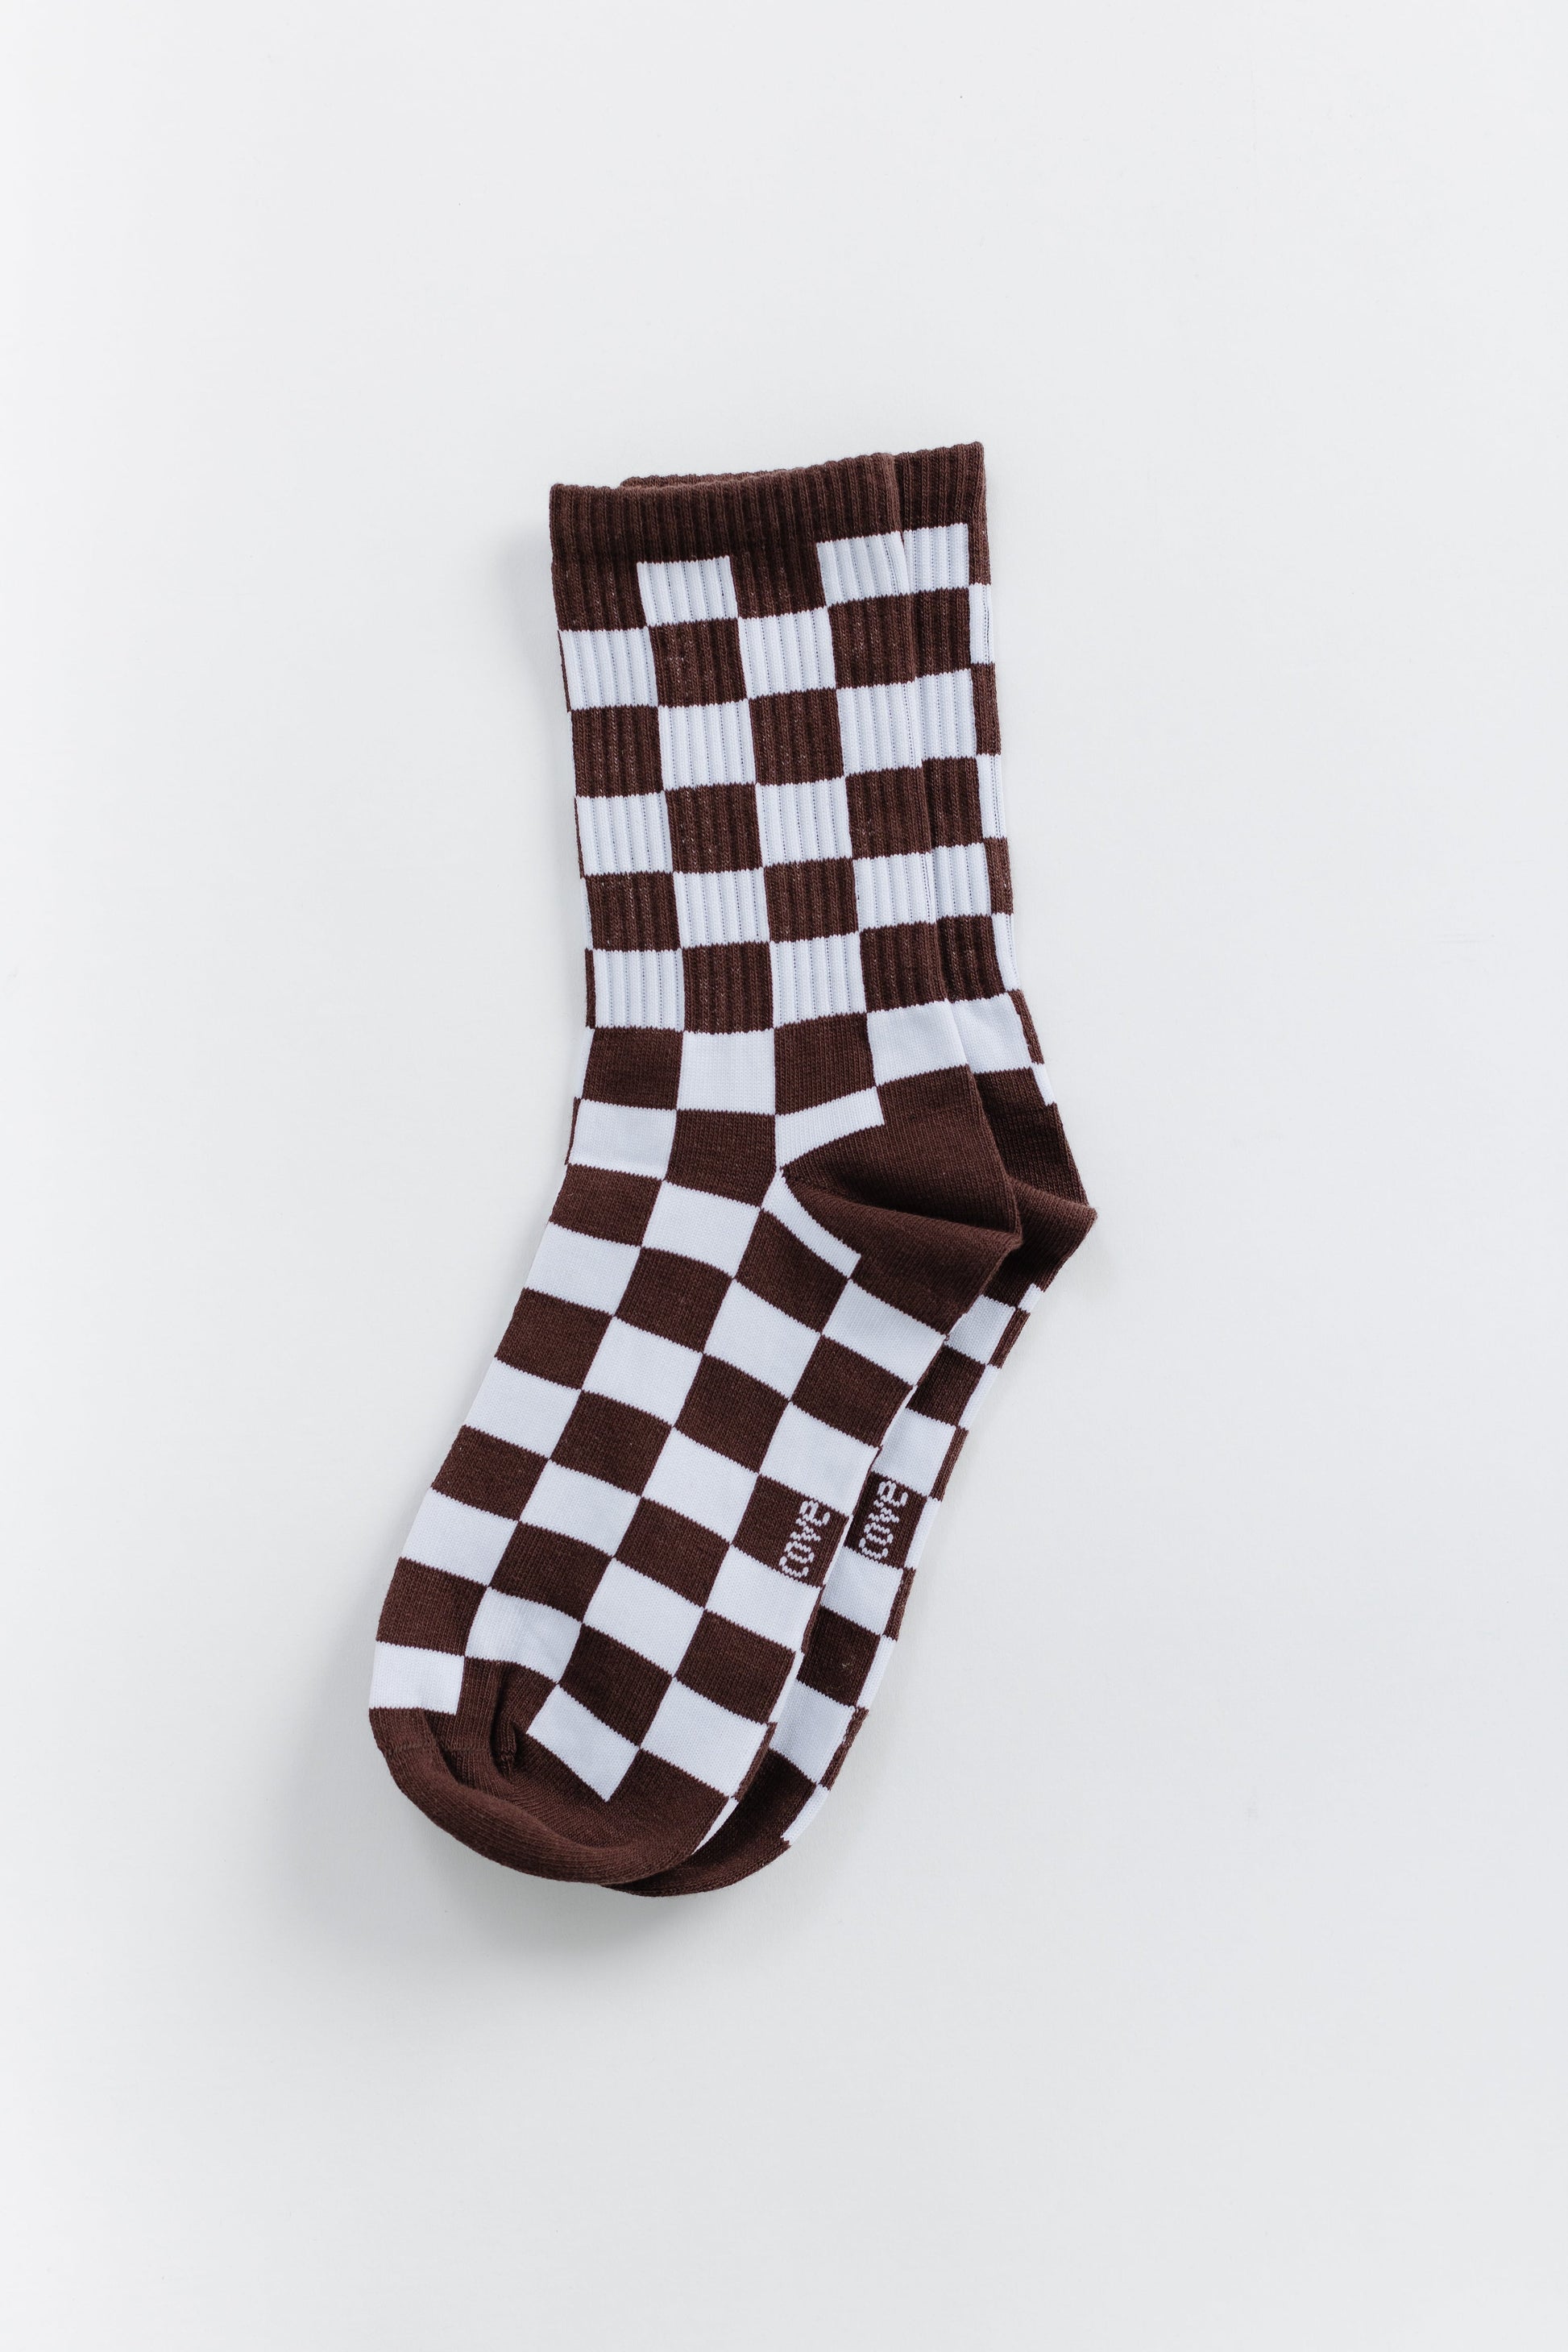 Cove Checker Retro Socks WOMEN'S SOCKS Cove Accessories Brown/White OS 